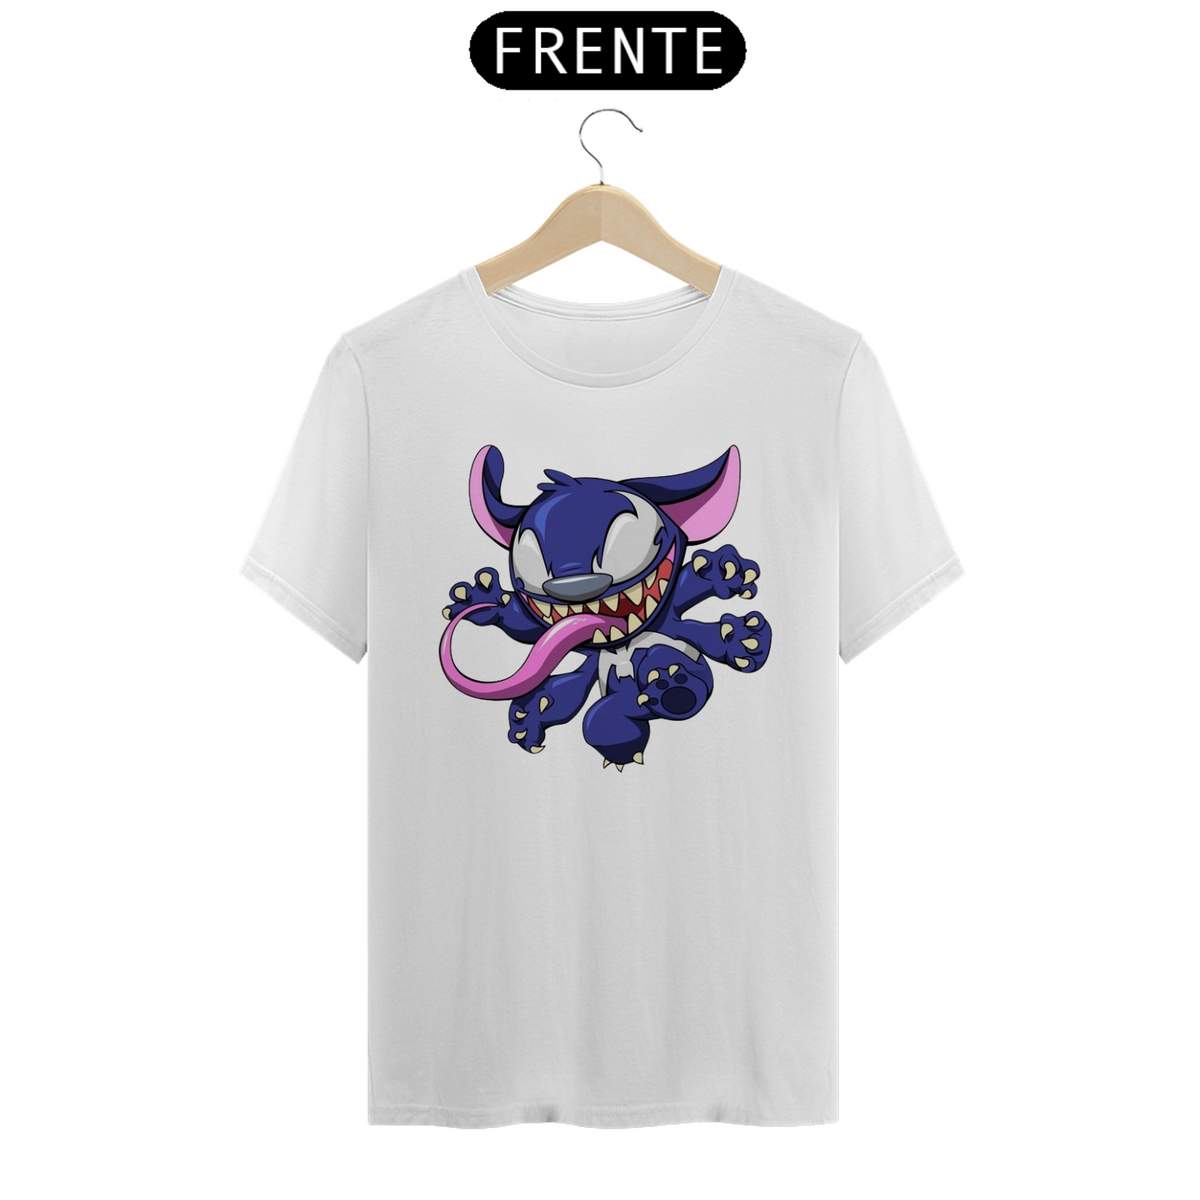 Nome do produto: Camiseta Classica Stitch - Venom